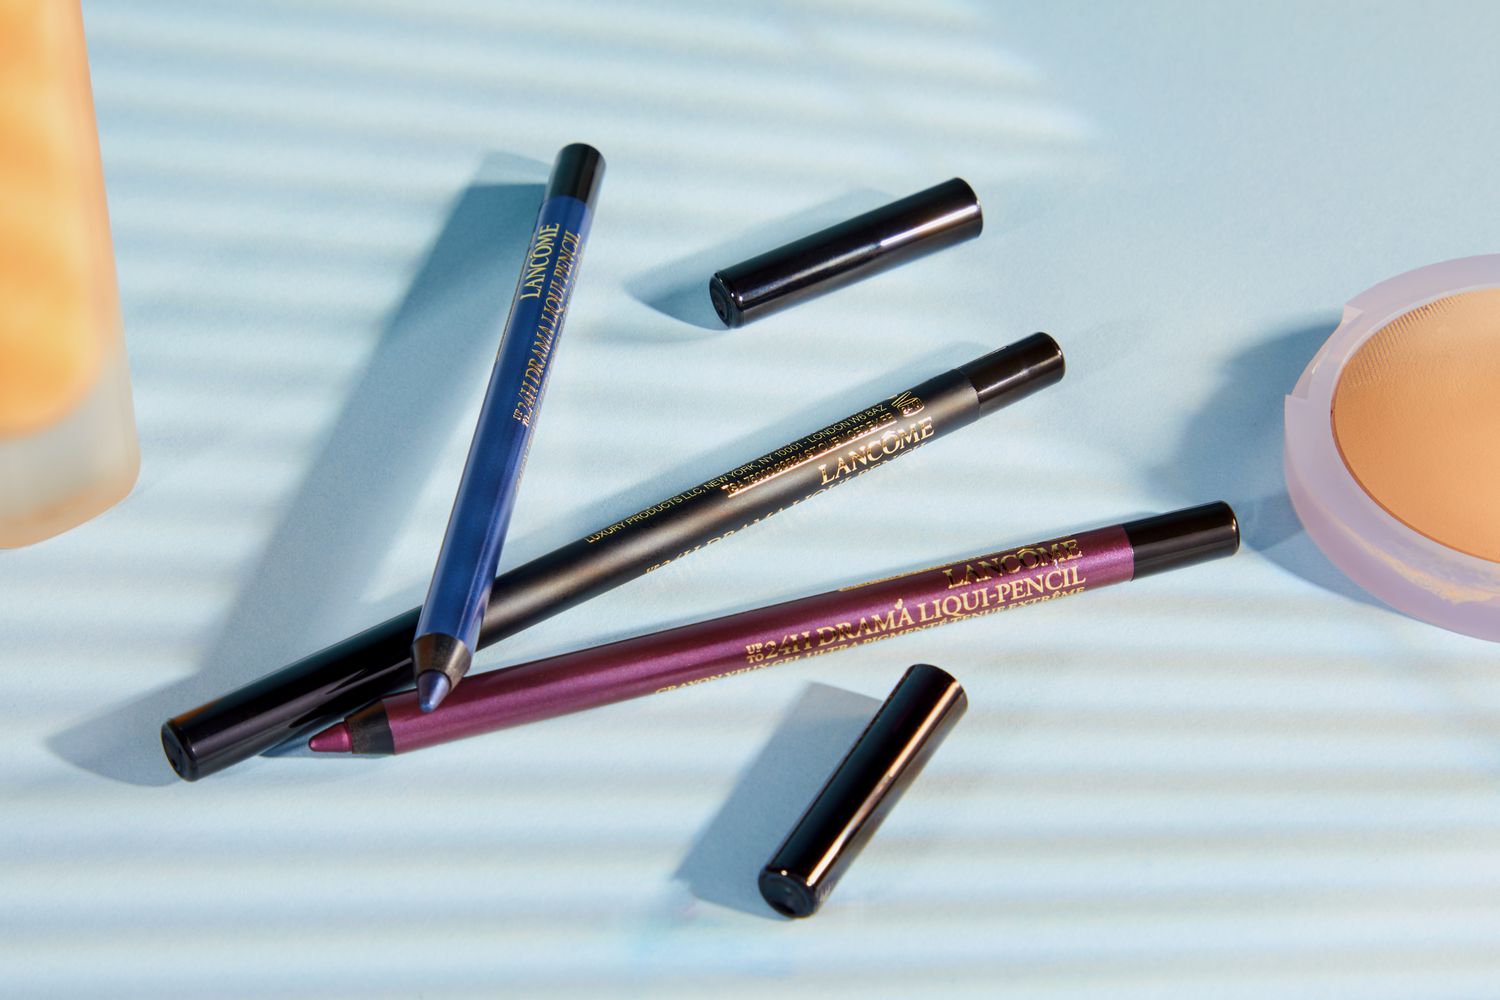 Two tubes of LancÃ´me Drama Liqui-Pencil Eyeliner